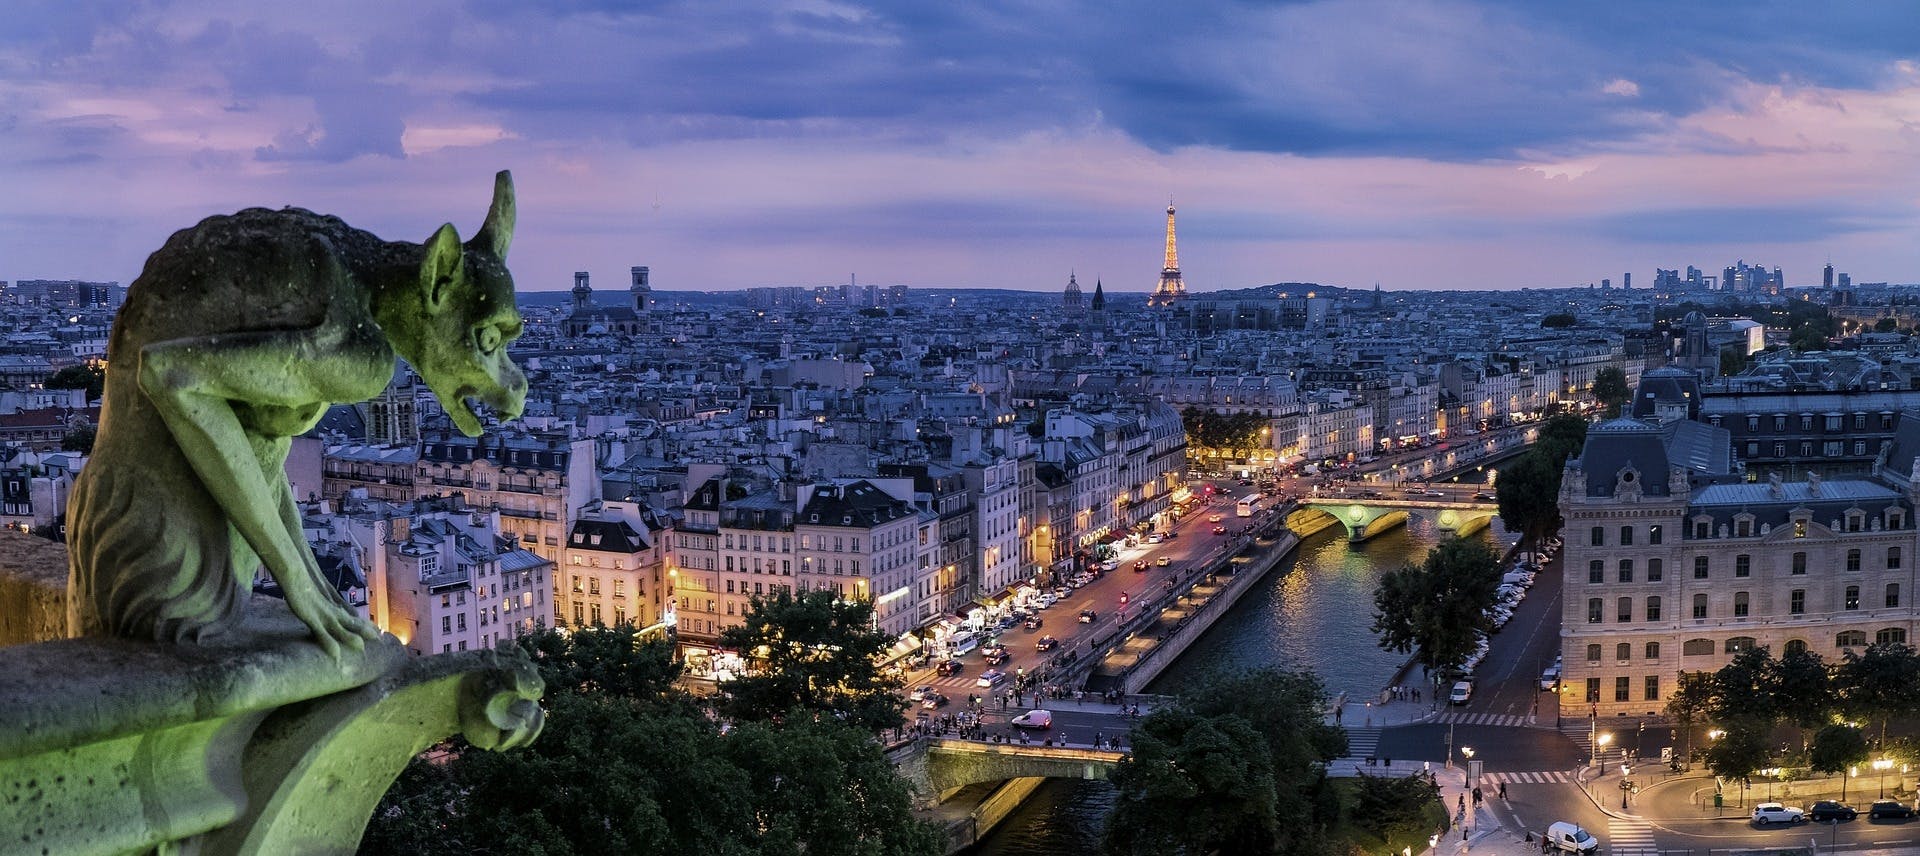 Samodzielny spacer po Paryżu z tajemniczą grą wokół Notre Dame